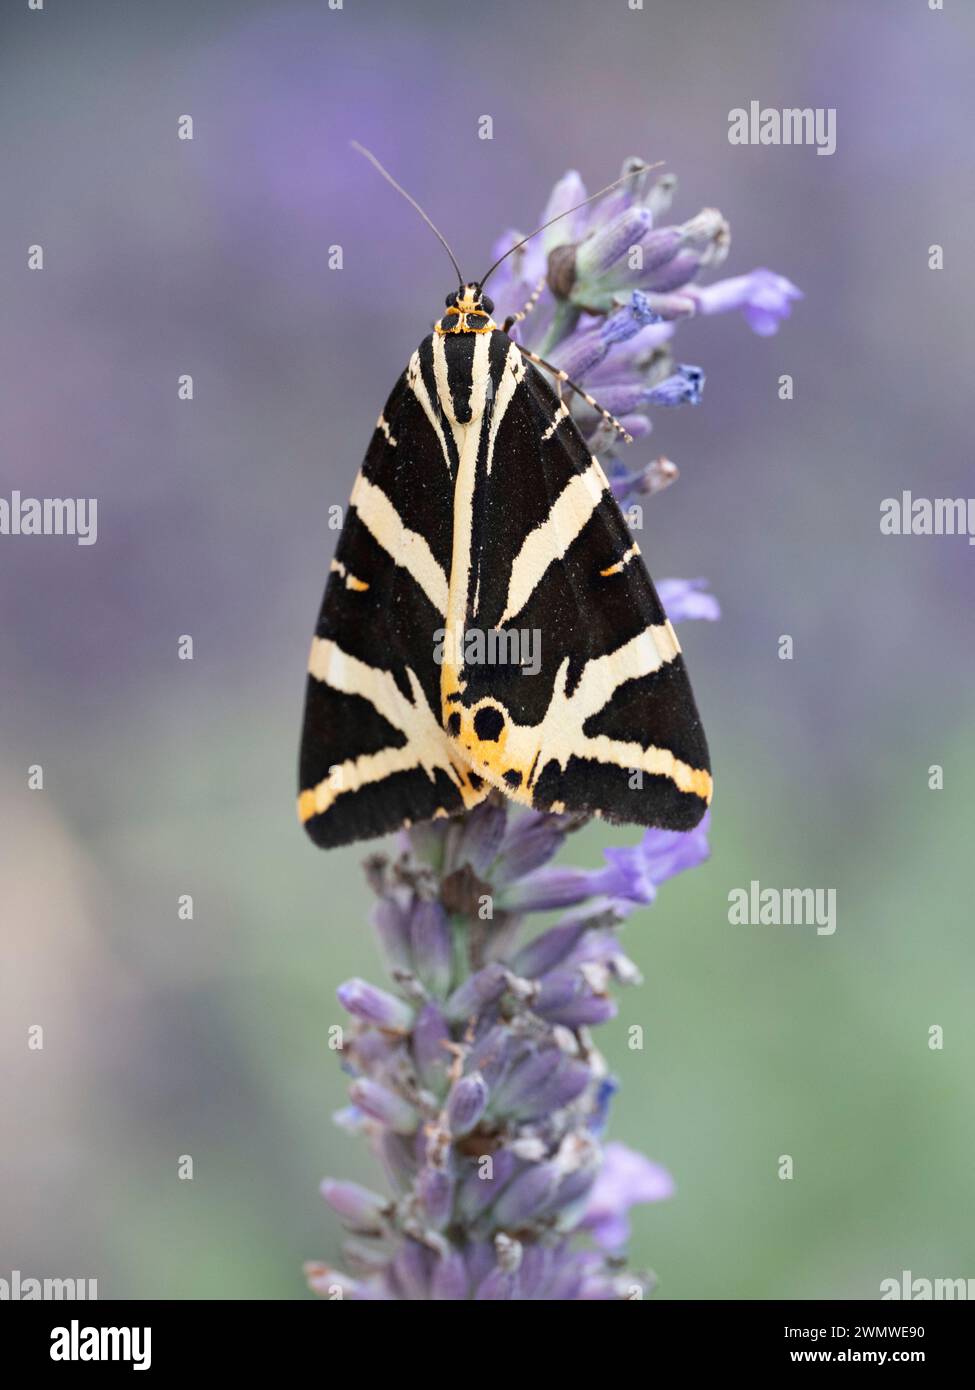 Jersey Tiger Moth (Euplagia quadripunctaria) on Lavender flower in garden, Ramsgate, Kent UK Stock Photo